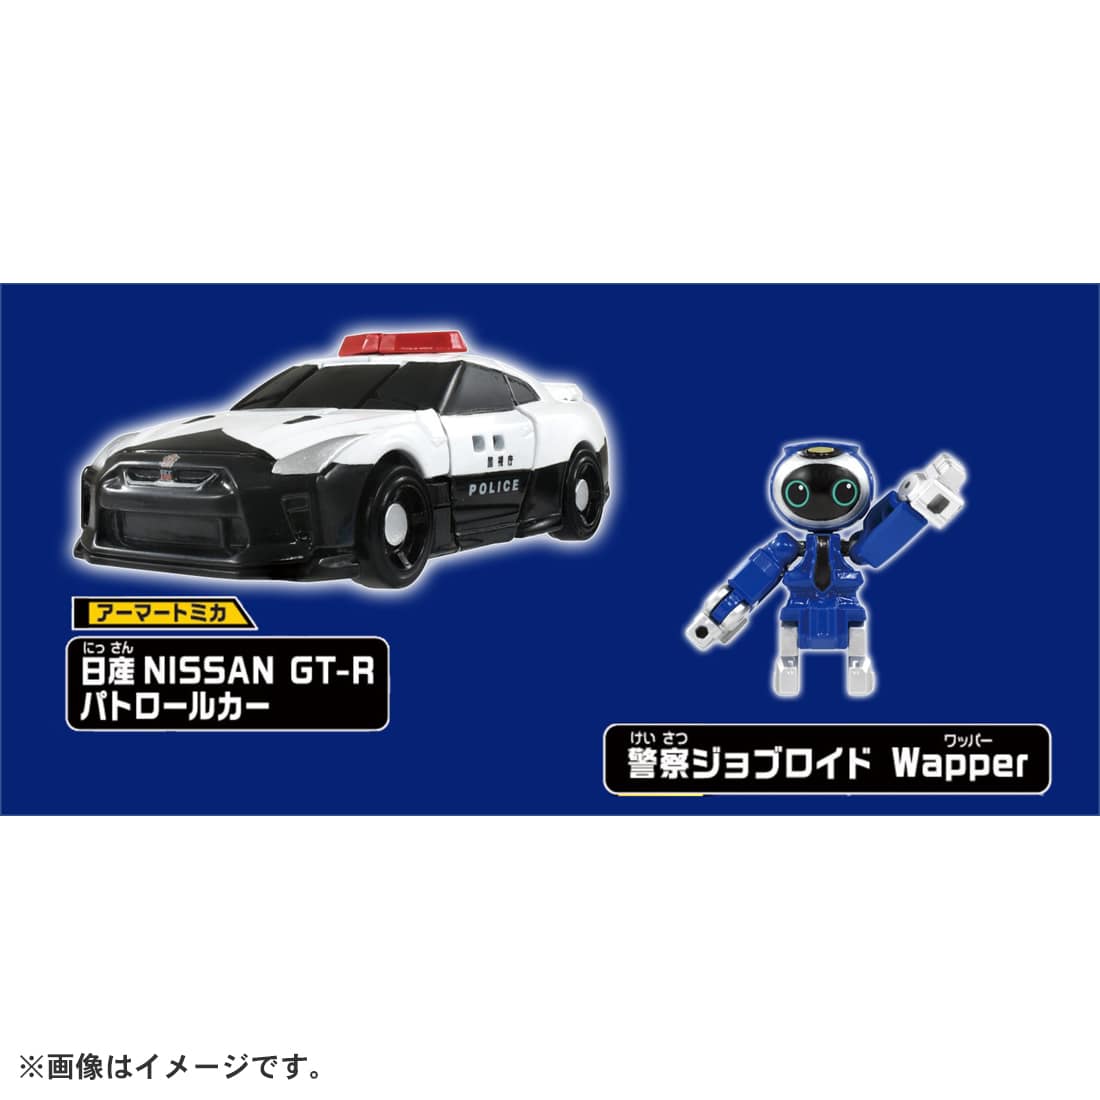 トミカ ジョブレイバー『JB01 ポリスブレイバー 日産 NISSAN GT-R パトロールカー』可変合体フィギュア-005